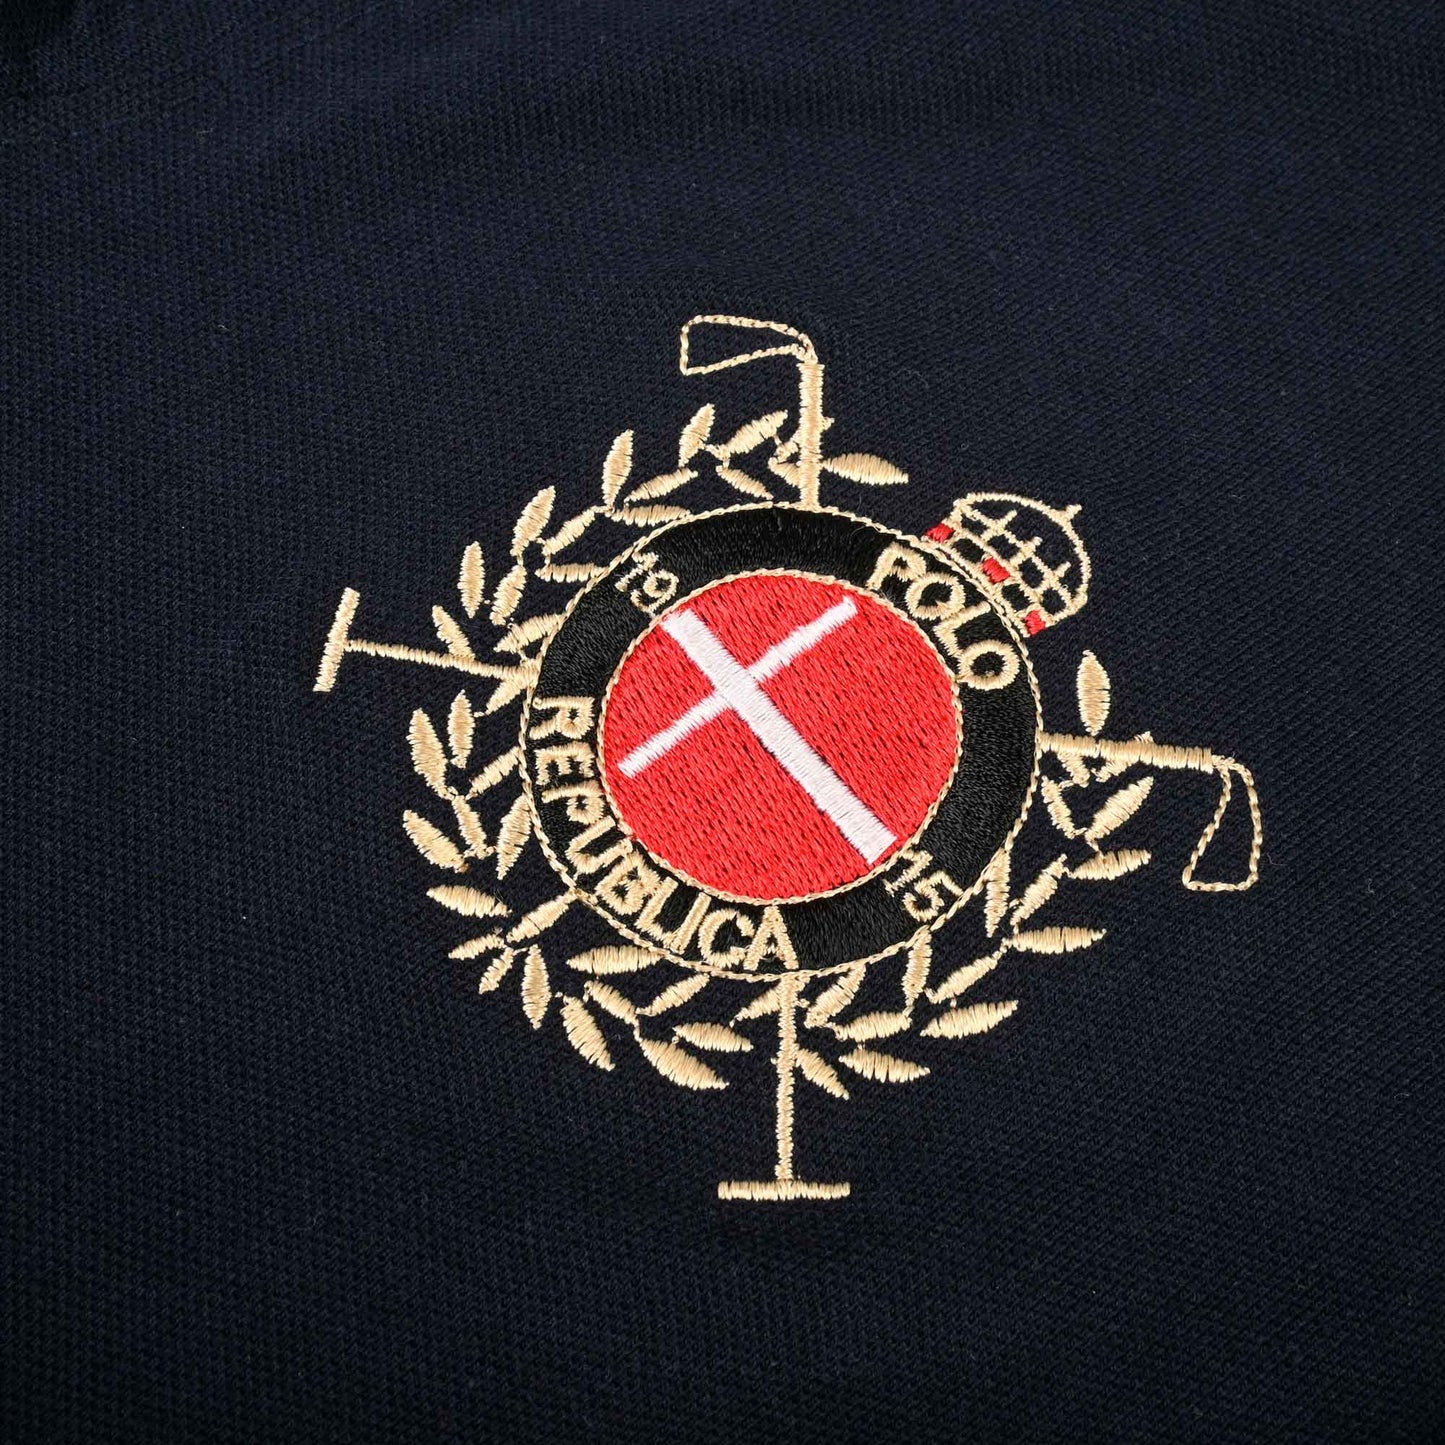 Polo Republica Men's Horse Rider & Flags Crest Embroidered Short Sleeve Polo Shirt Men's Polo Shirt Polo Republica 